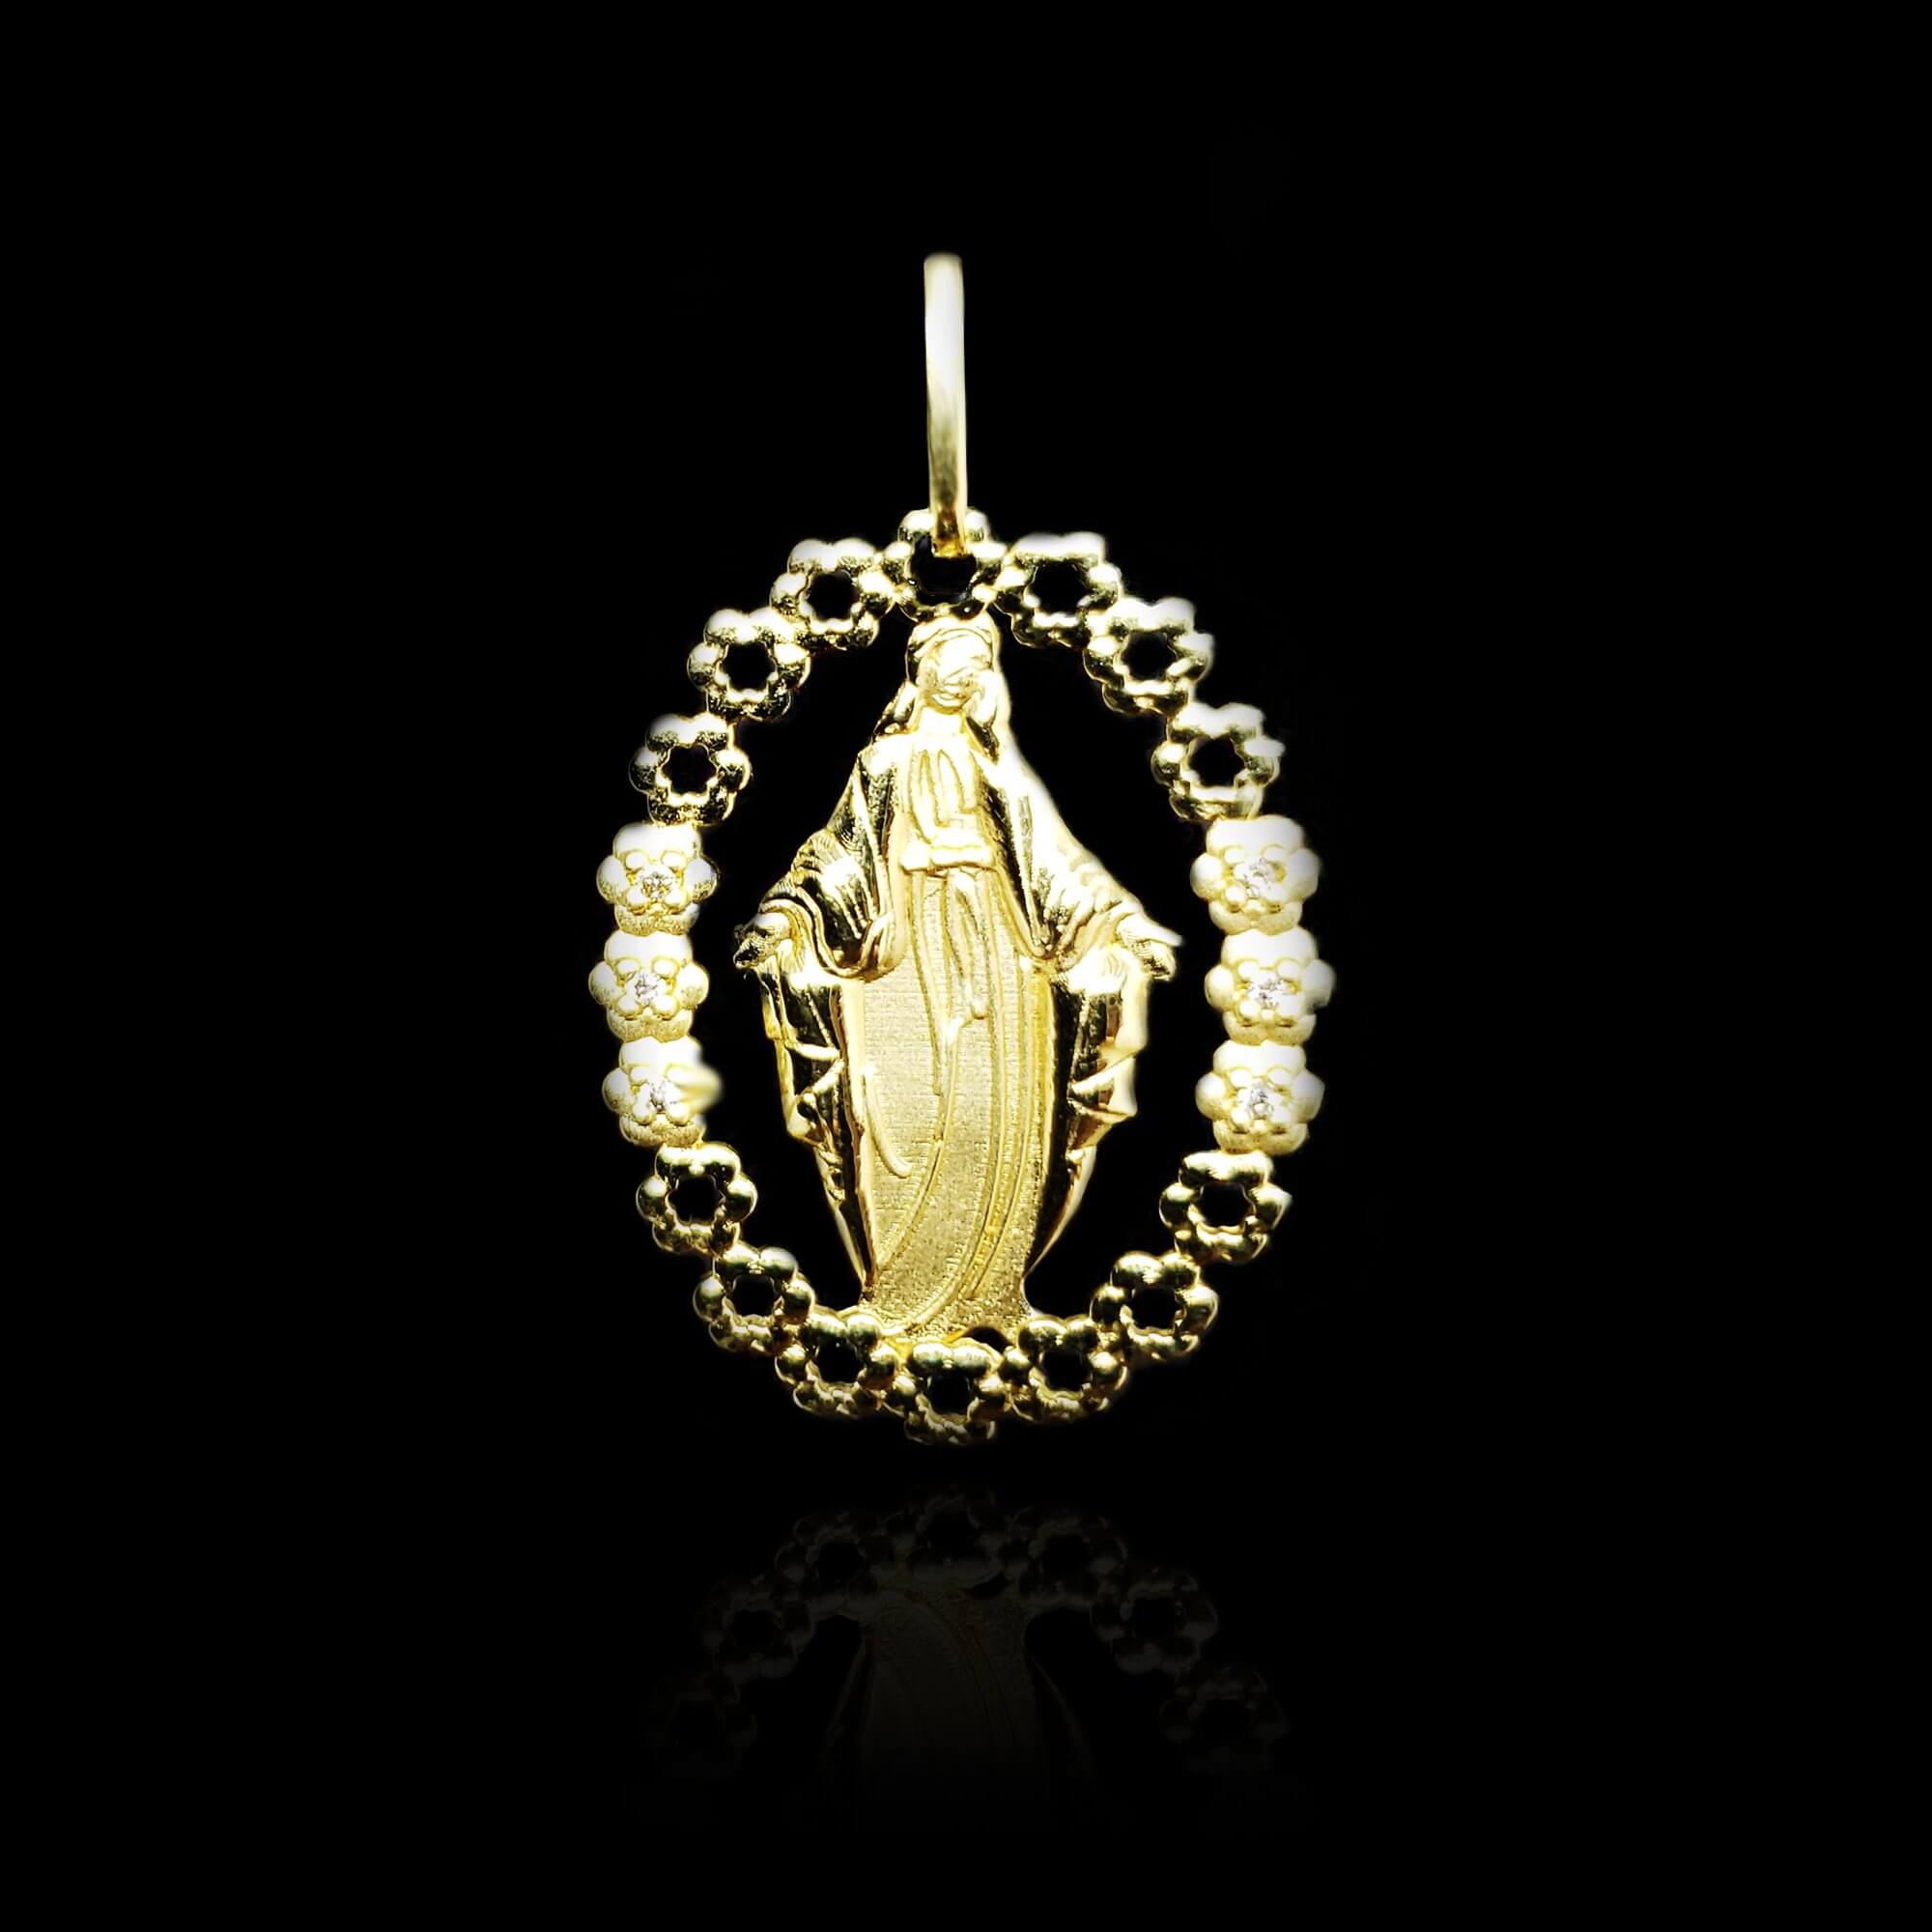 Pingente Ouro 18k Nossa Senhora com Diamantes - Masate Exclusive